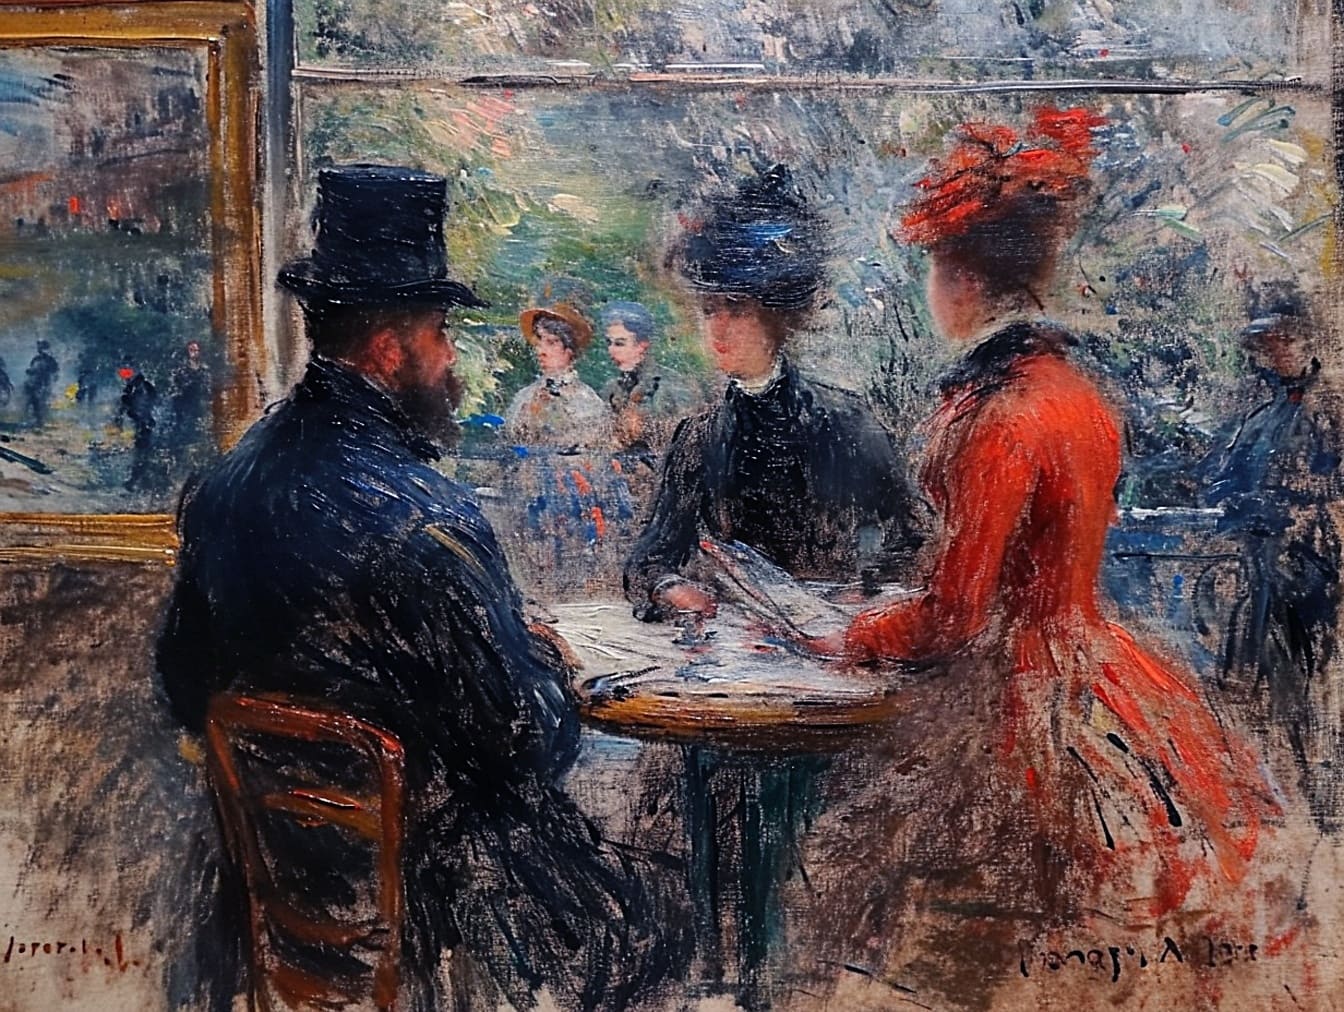 Ölgemälde einer Gruppe von Menschen, die an einem Tisch sitzen und die Restaurantatmosphäre des 19. Jahrhunderts darstellen